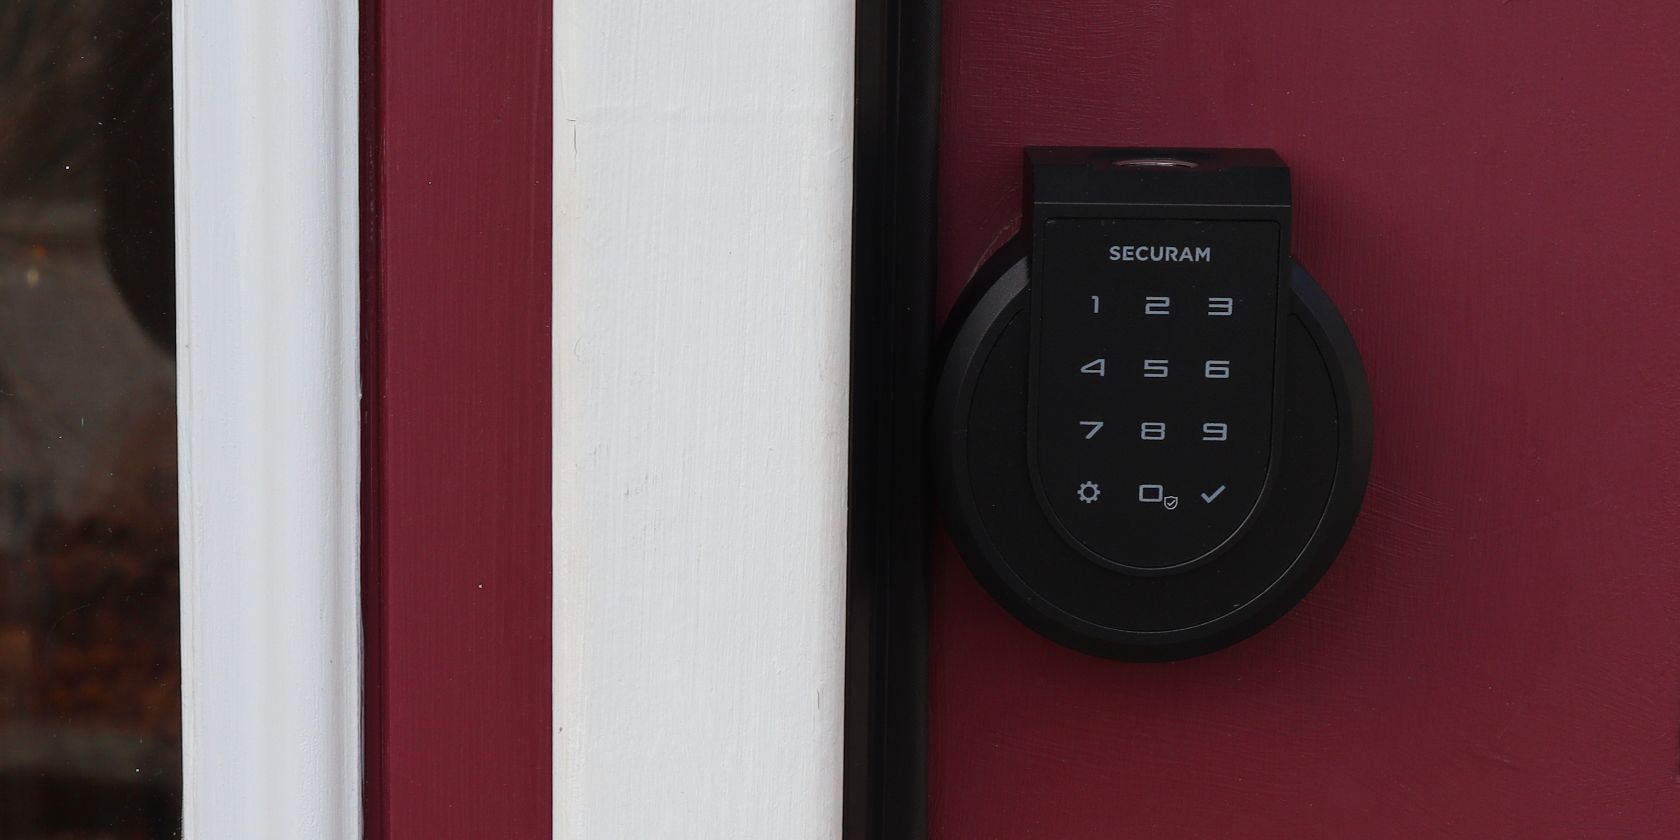 Securam Smart Lock Featured Image on Red Door